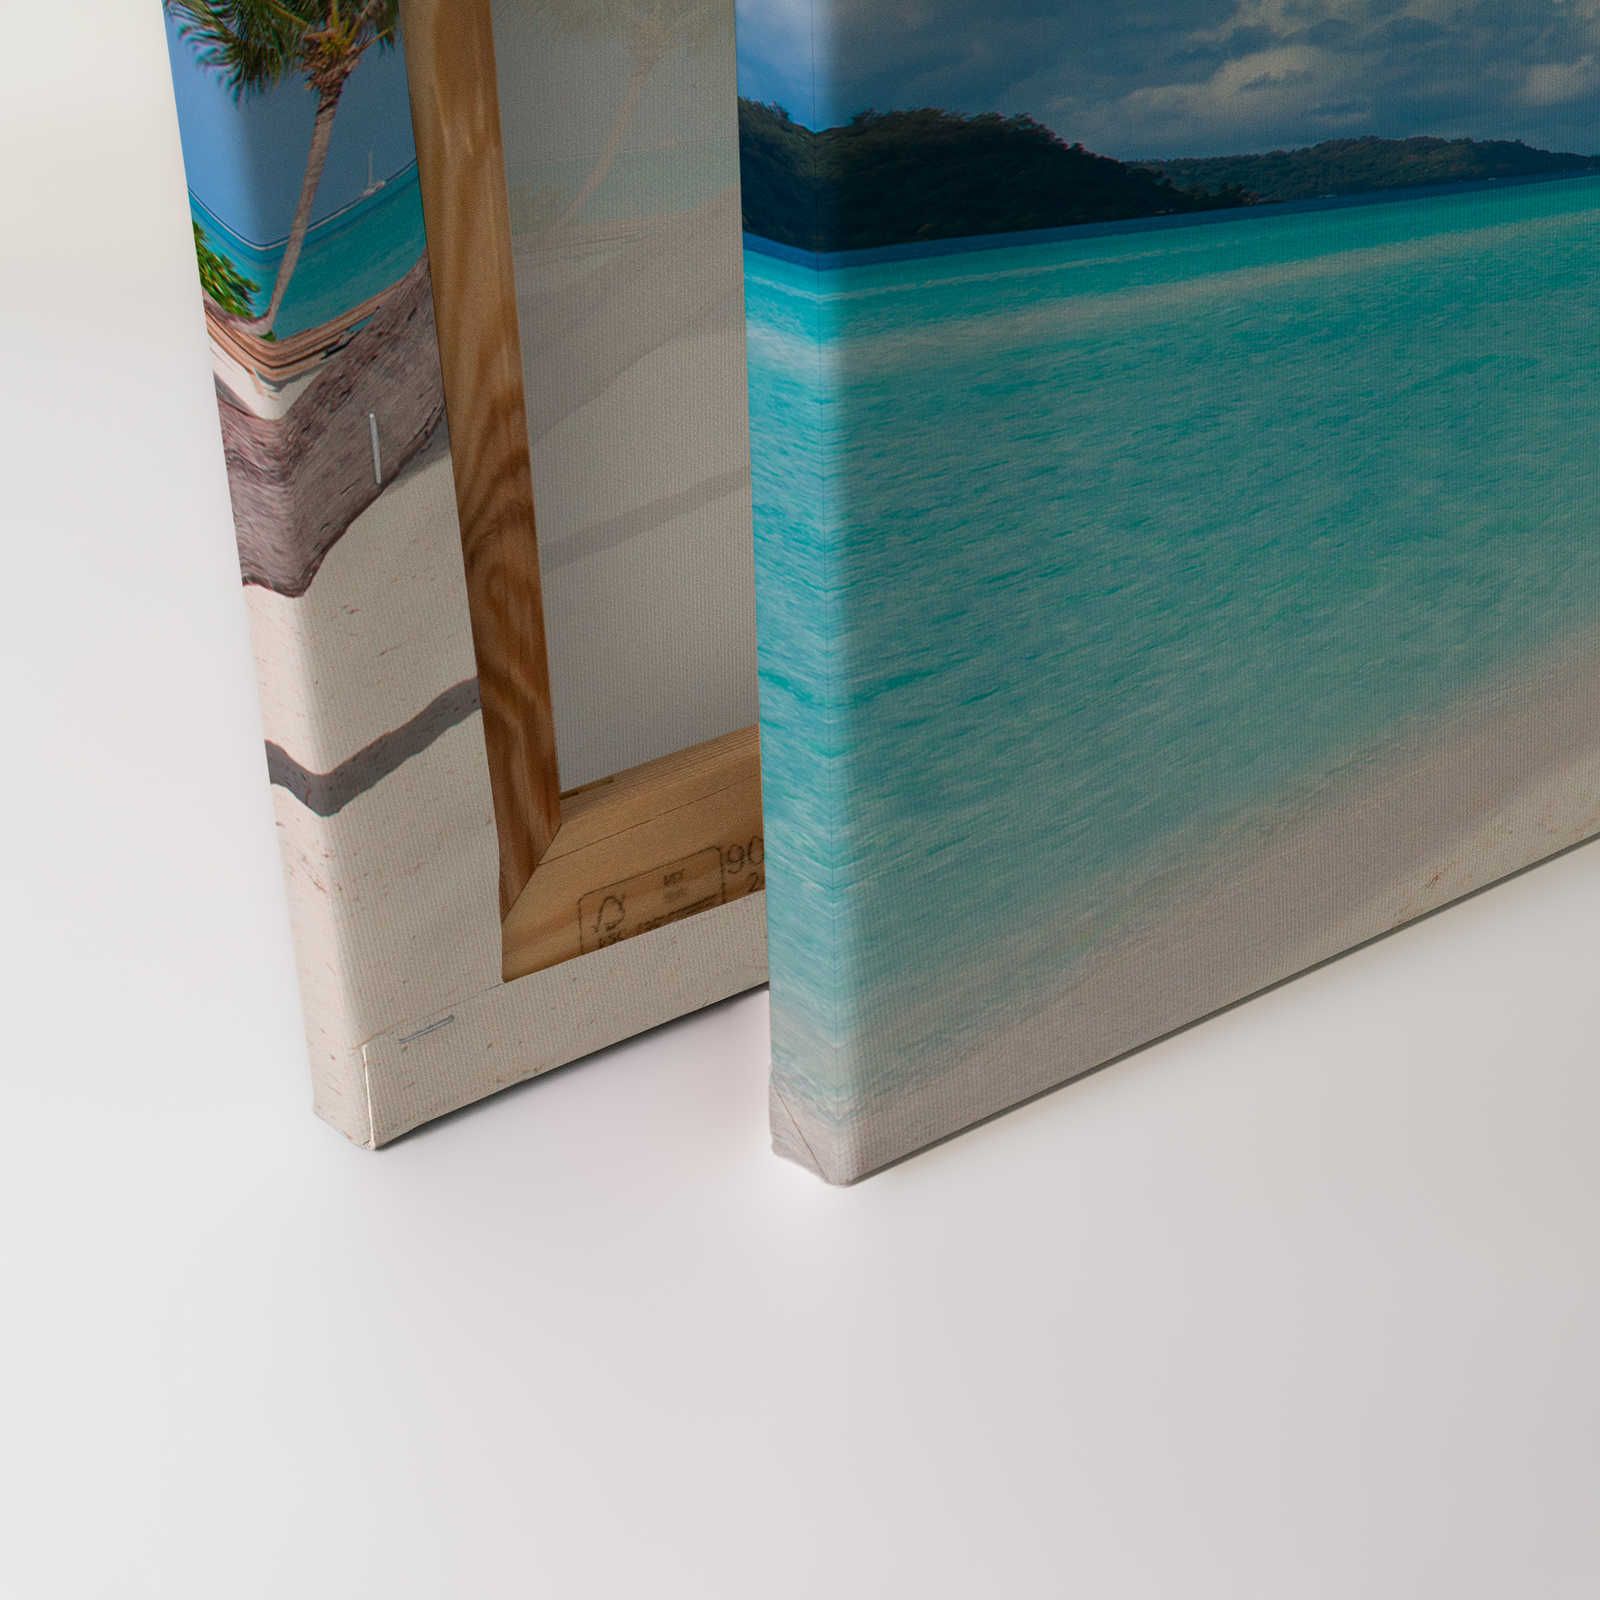             Leinwandbild Idyllischer Strand mit klarem Wasser und Palmen – 0,90 m x 0,60 m
        